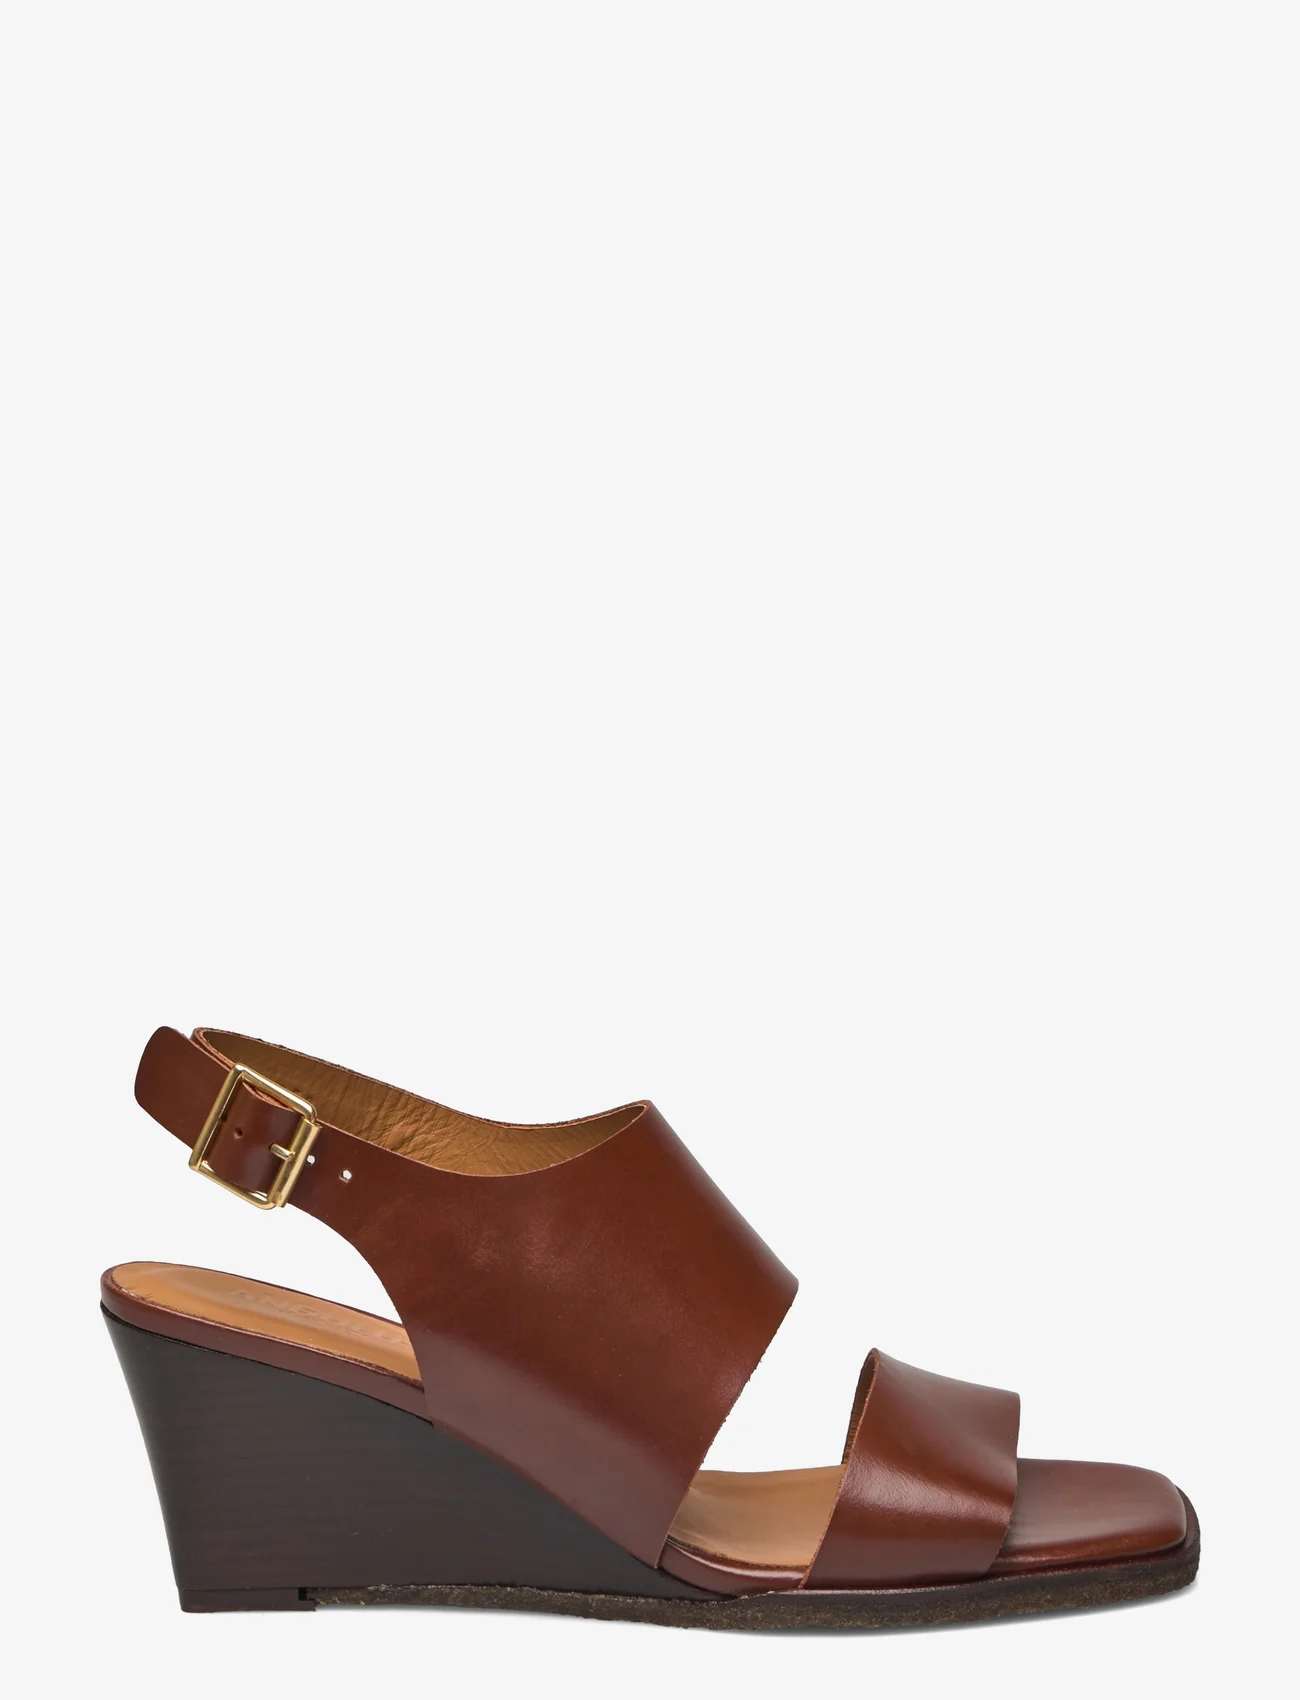 ANGULUS - Sandals - Block heels - sandały na obcasie - 1837 brown - 1